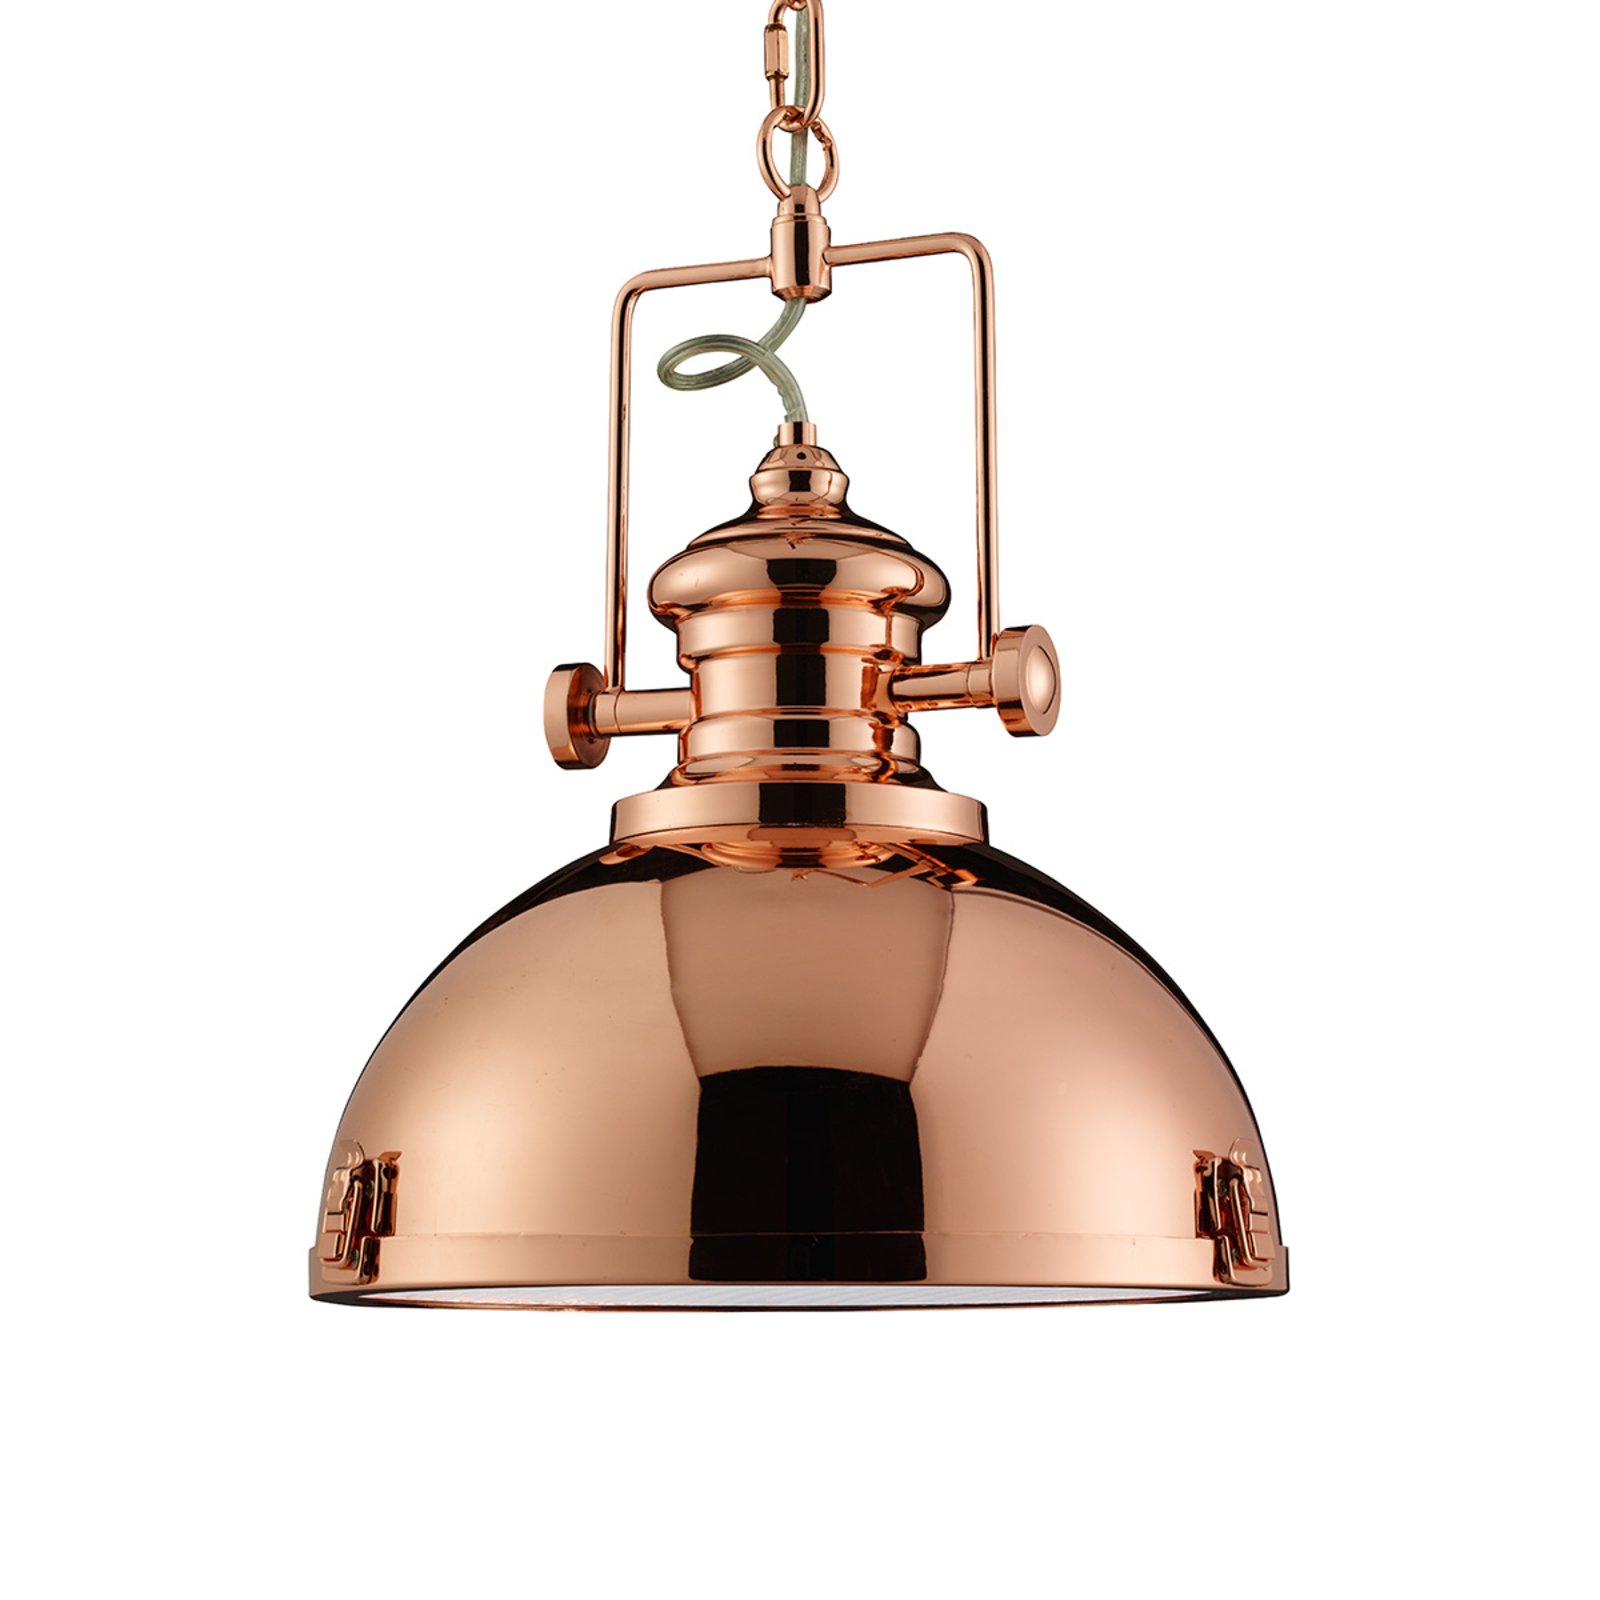 Metalna viseća svjetiljka, industrijski dizajn, bakrene boje